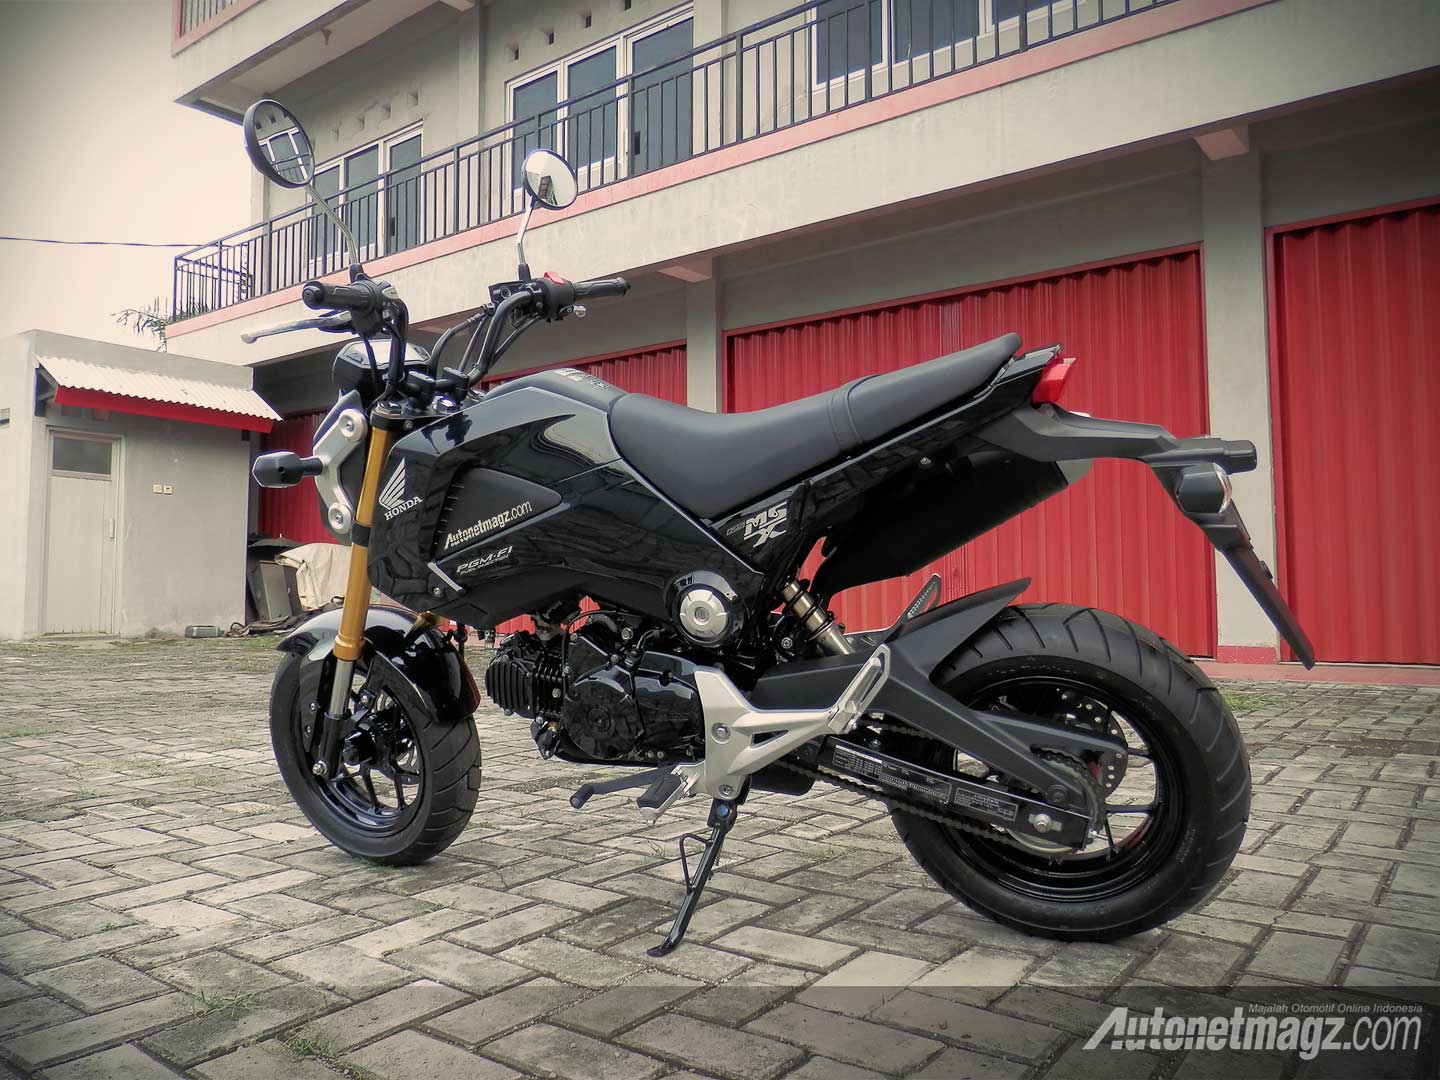 Honda, Honda MSX125 Indonesia: Honda MSX125 Si Kecil Yang Trendy Dan Bertenaga Mumpuni